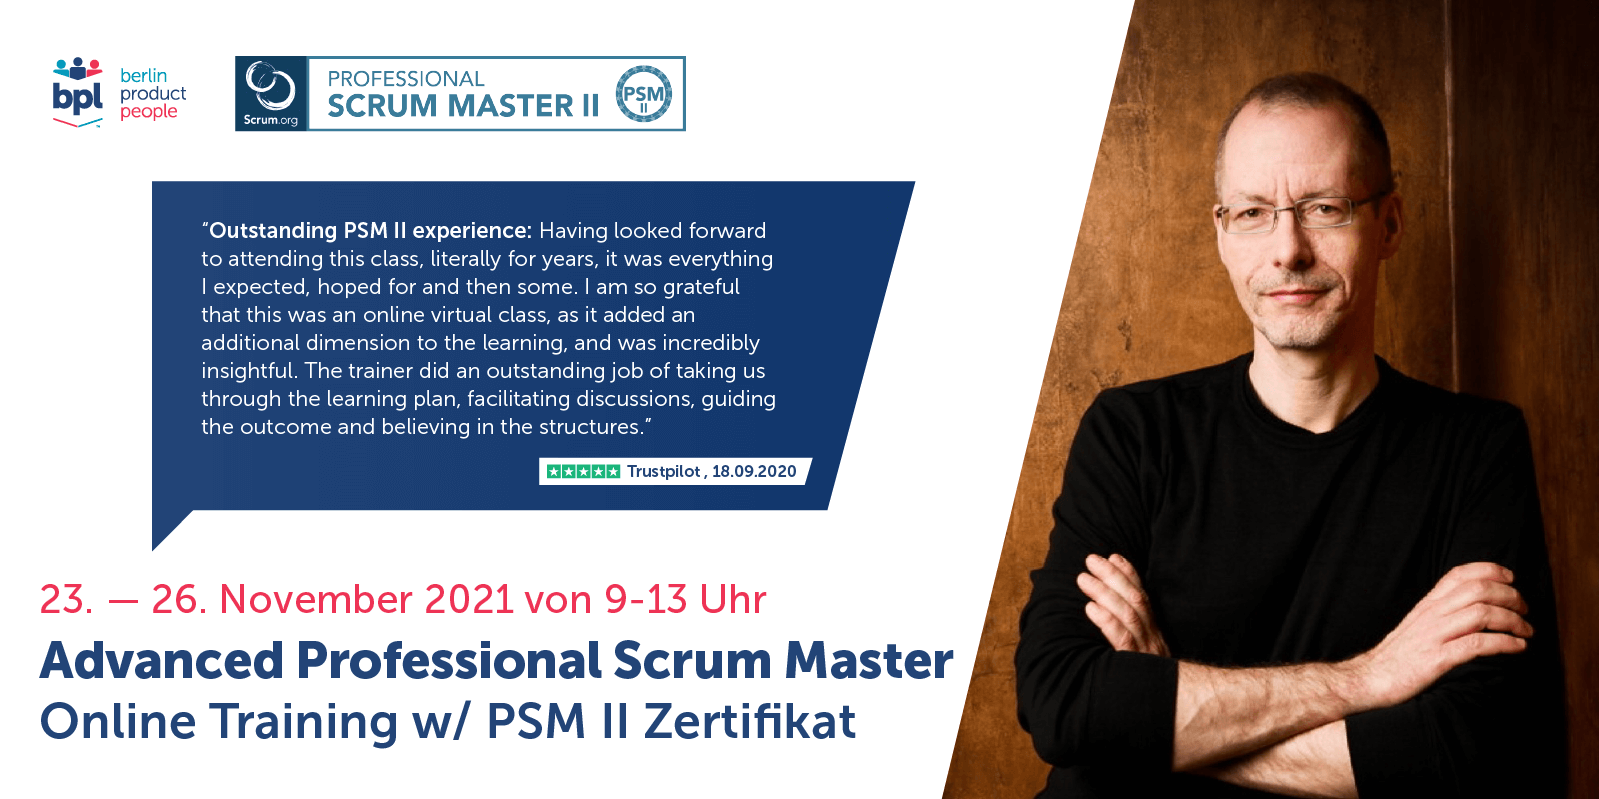 Fortgeschrittenen Professional Scrum Master Online Schulung auf Deutsch mit PSM II Zertifikat — 23. bis 26. November 2021